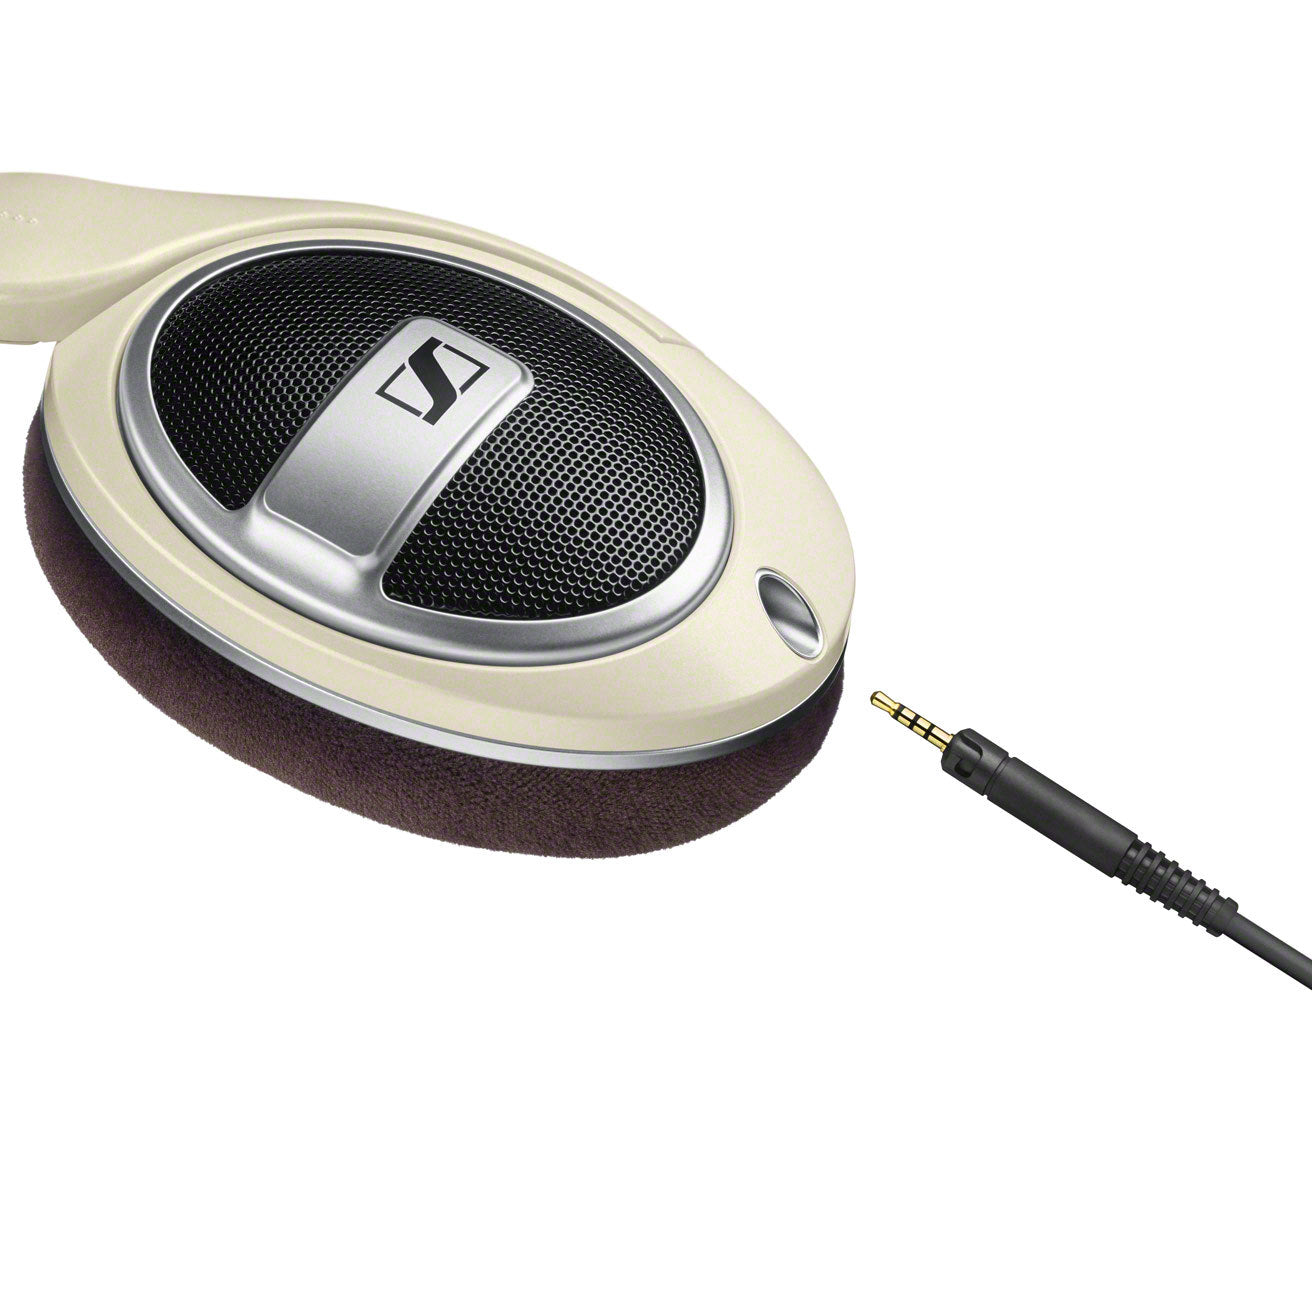 Sennheiser HD 599 High End Over Ear Headphone - Cream & Brown